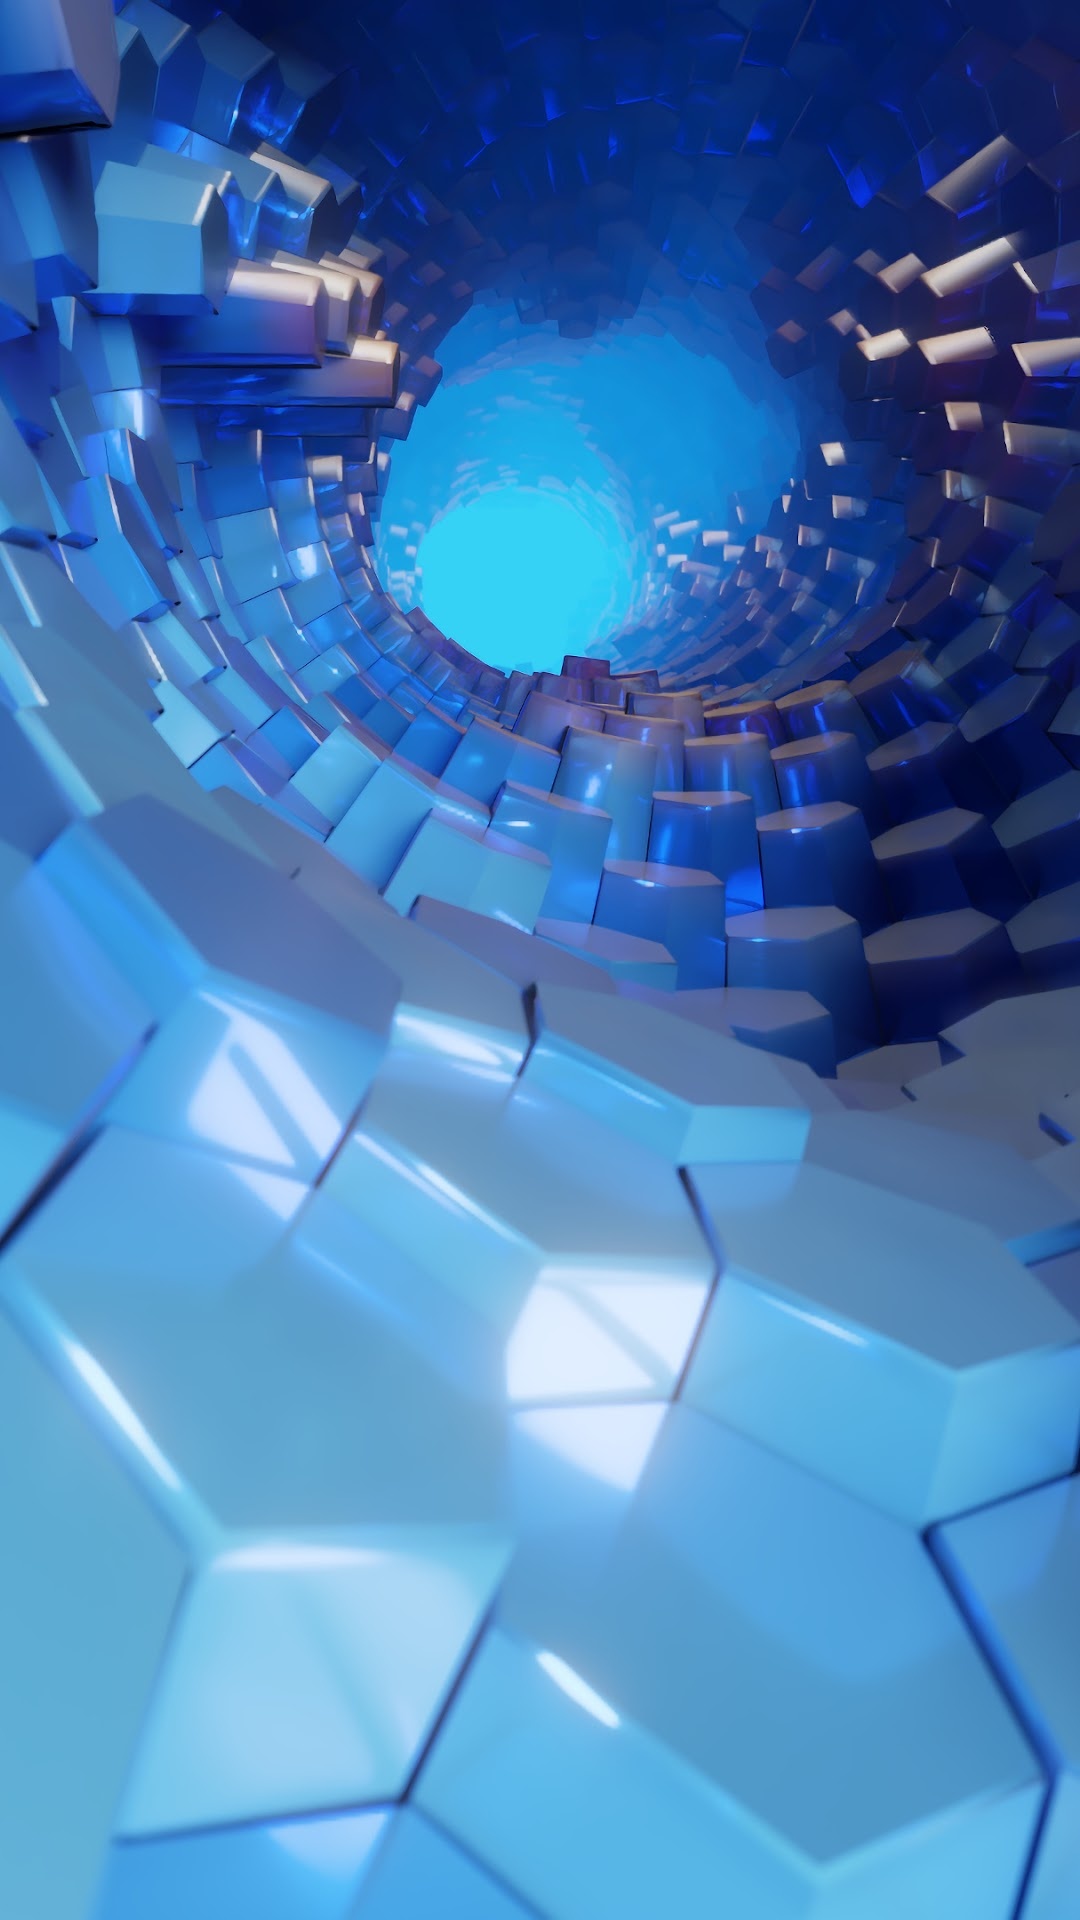 3D blue abstract, Hexagon wallpaper, 4K resolution, Stunning visuals, 1080x1920 Full HD Handy